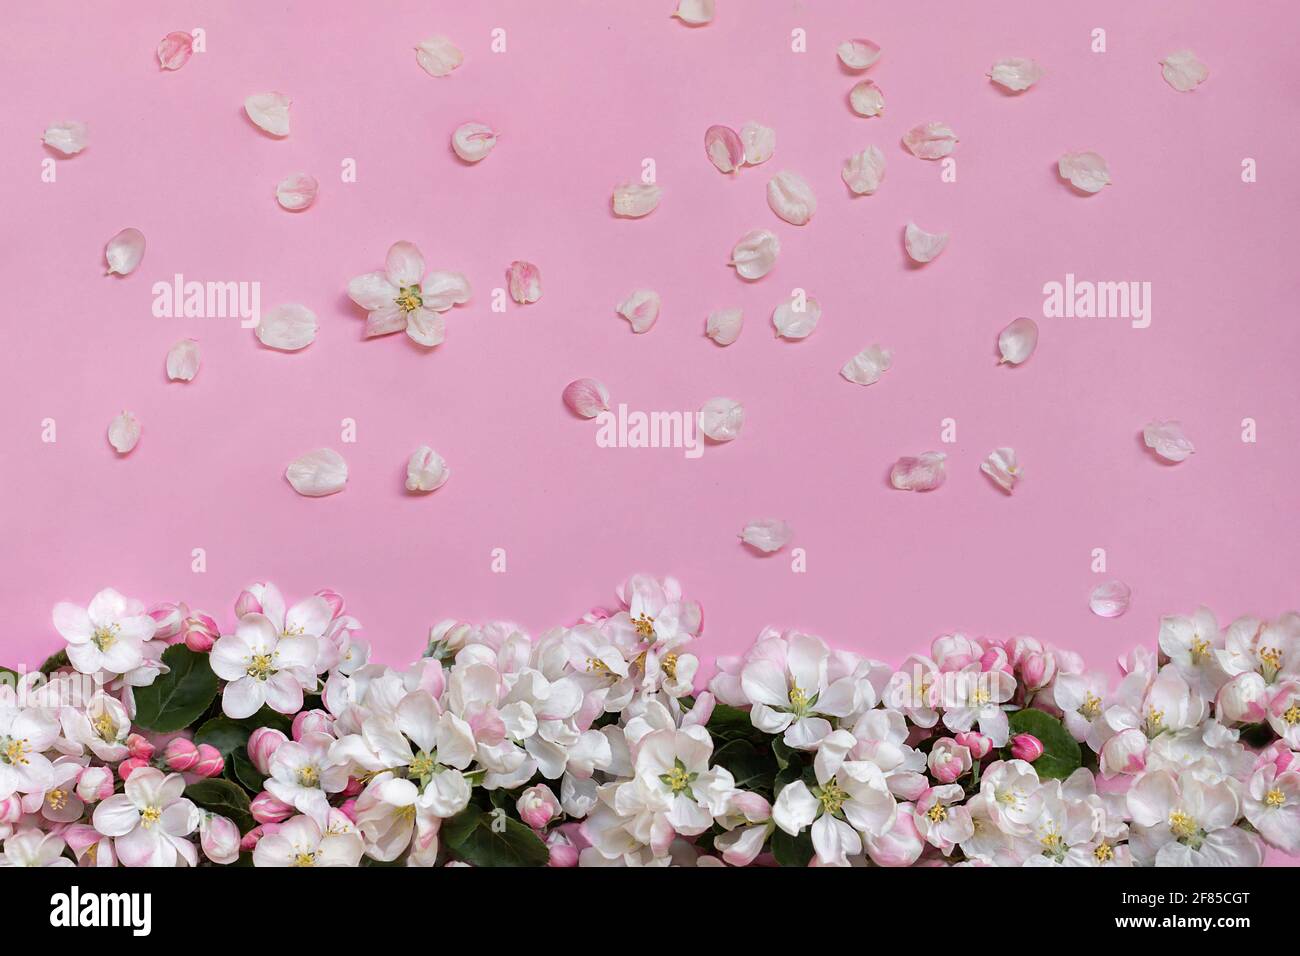 Apfelblüten auf rosa Hintergrund. Draufsicht. Nahaufnahme. Leerer Ort für Grüße, Einladungen, inspirierende Texte, schöne Zitate oder positive Sprüche. Stockfoto